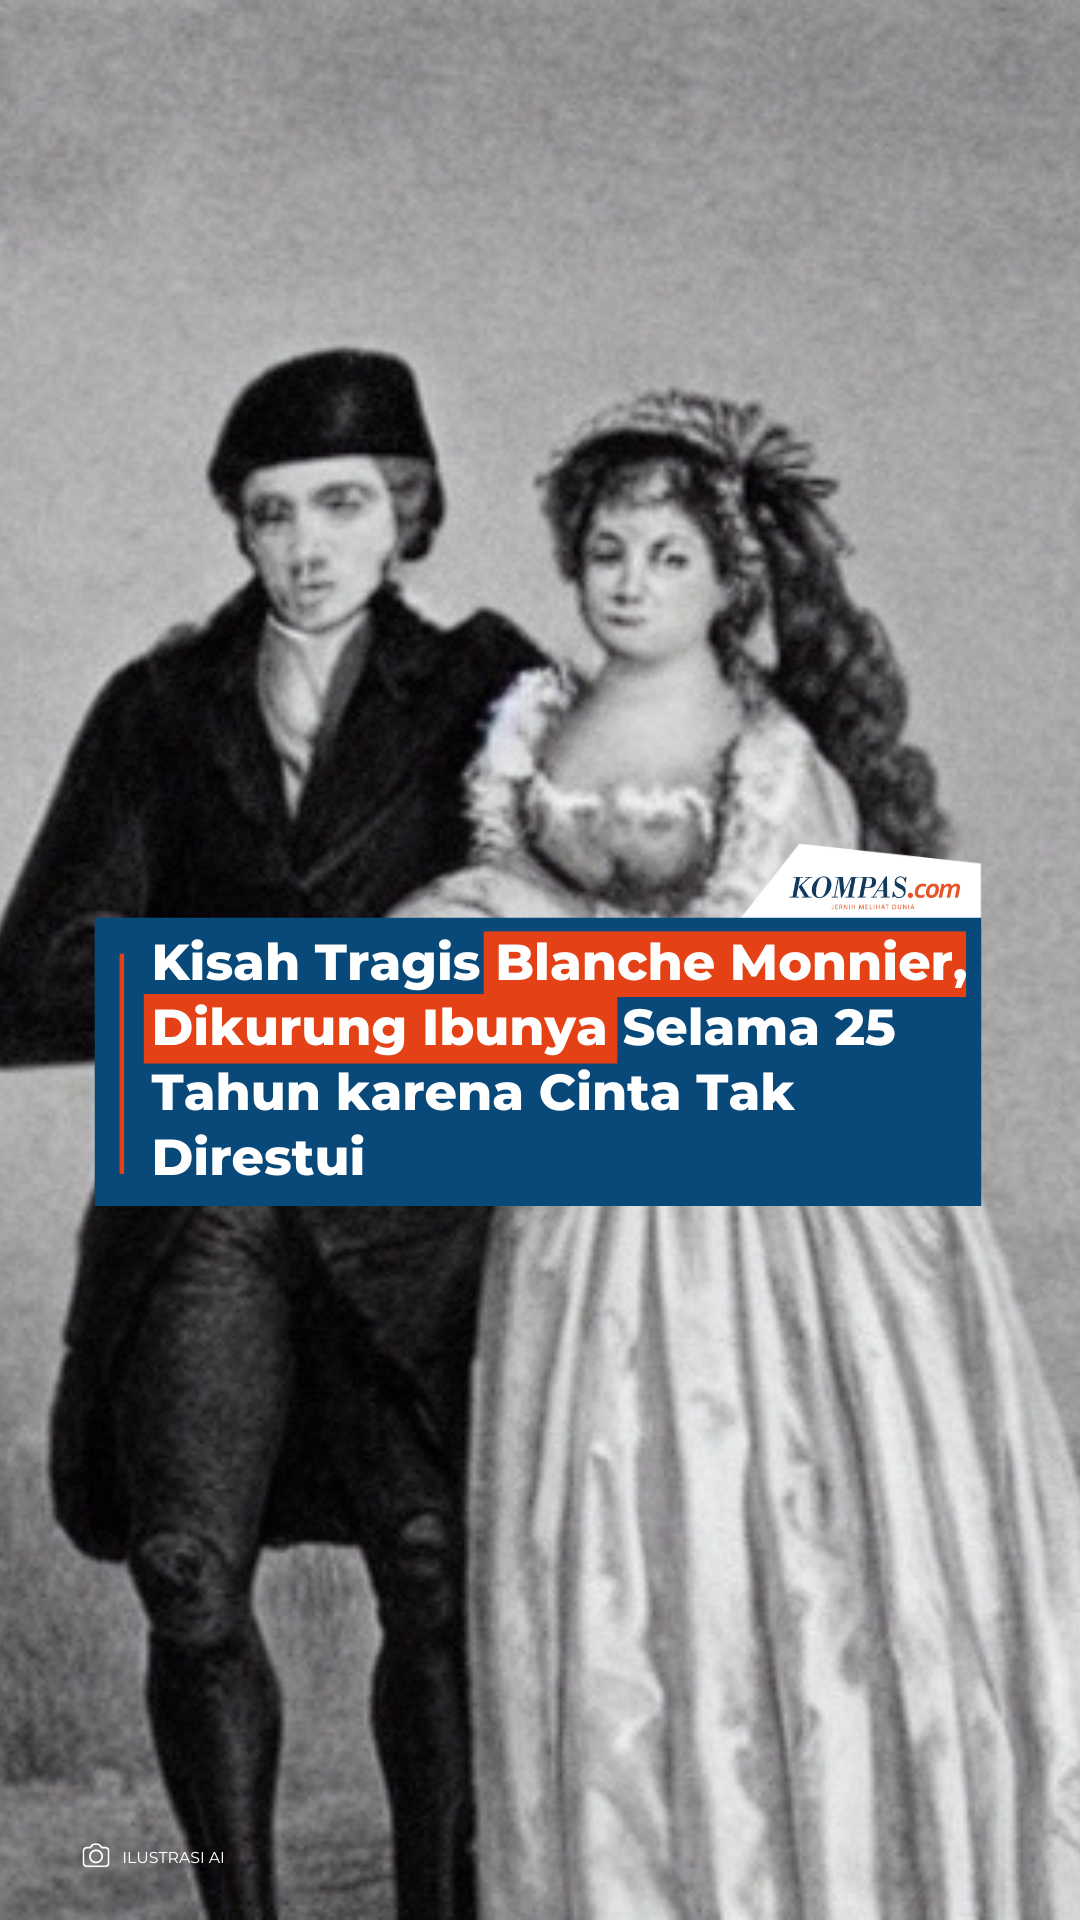 Kisah Tragis Blanche Monnier, Dikurung Ibunya Selama 25 Tahun karena Cinta Tak Direstui